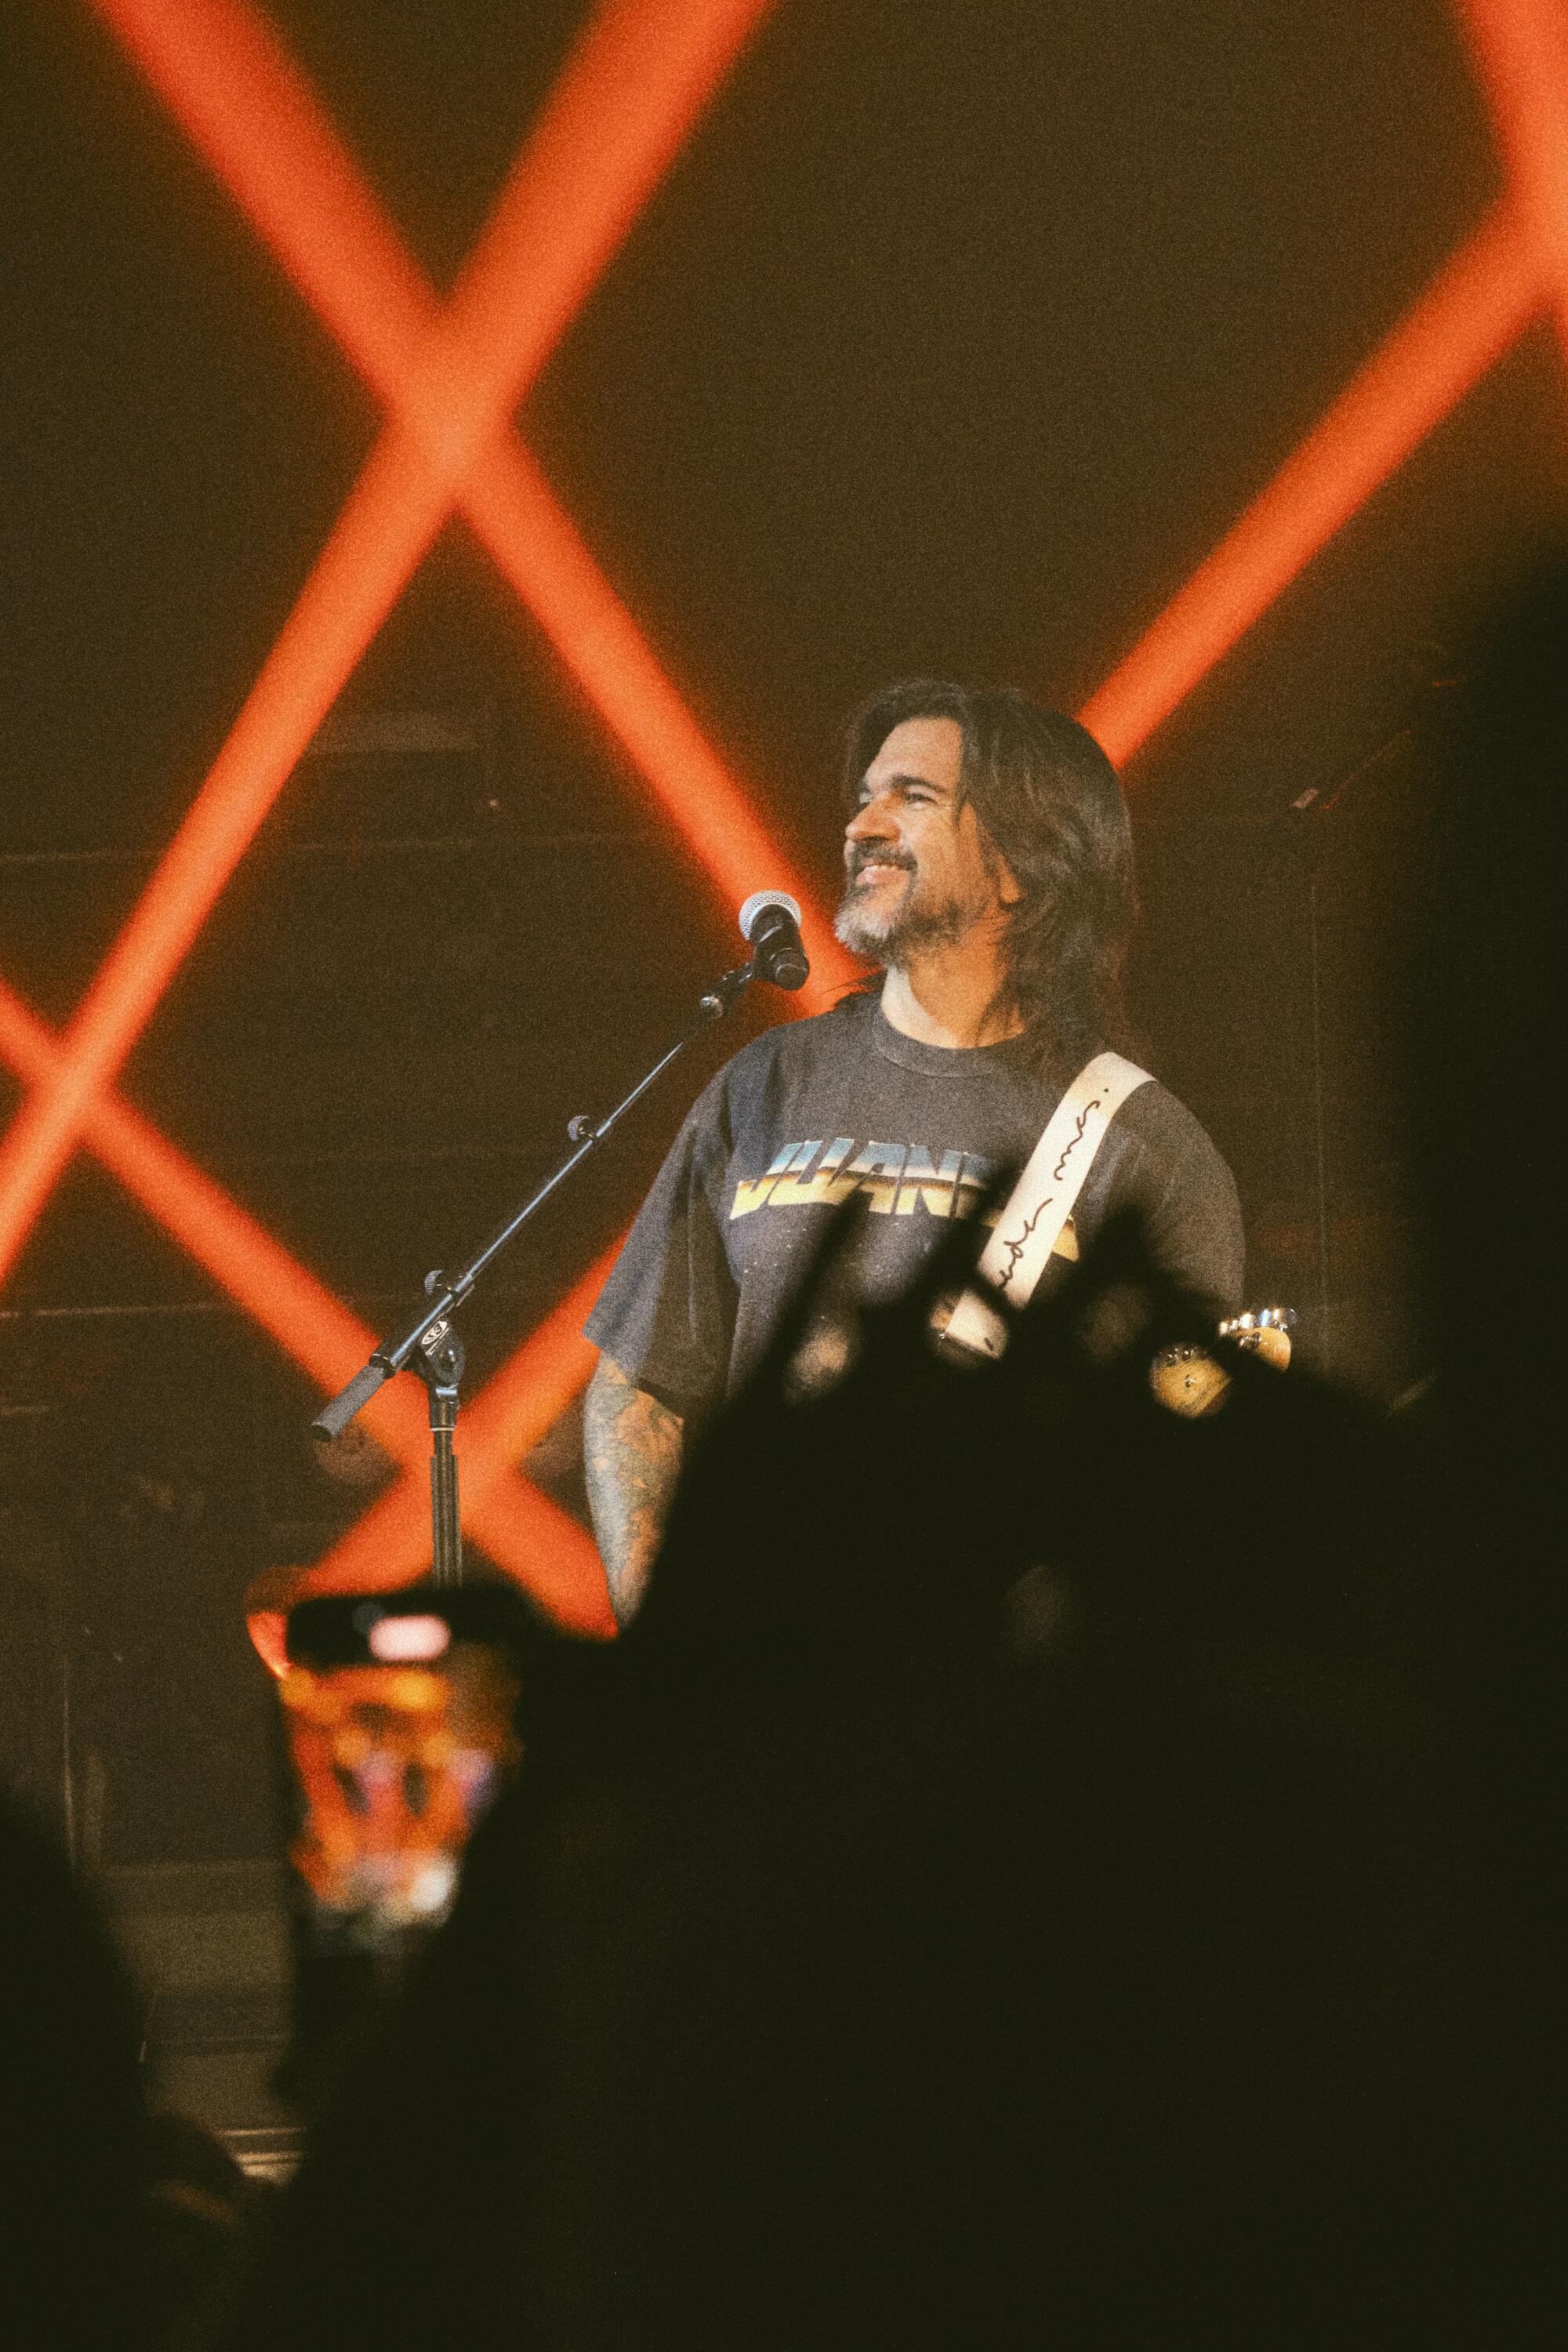 Juane trae su "Vida Cotidiana Tour" a Los ngeles.